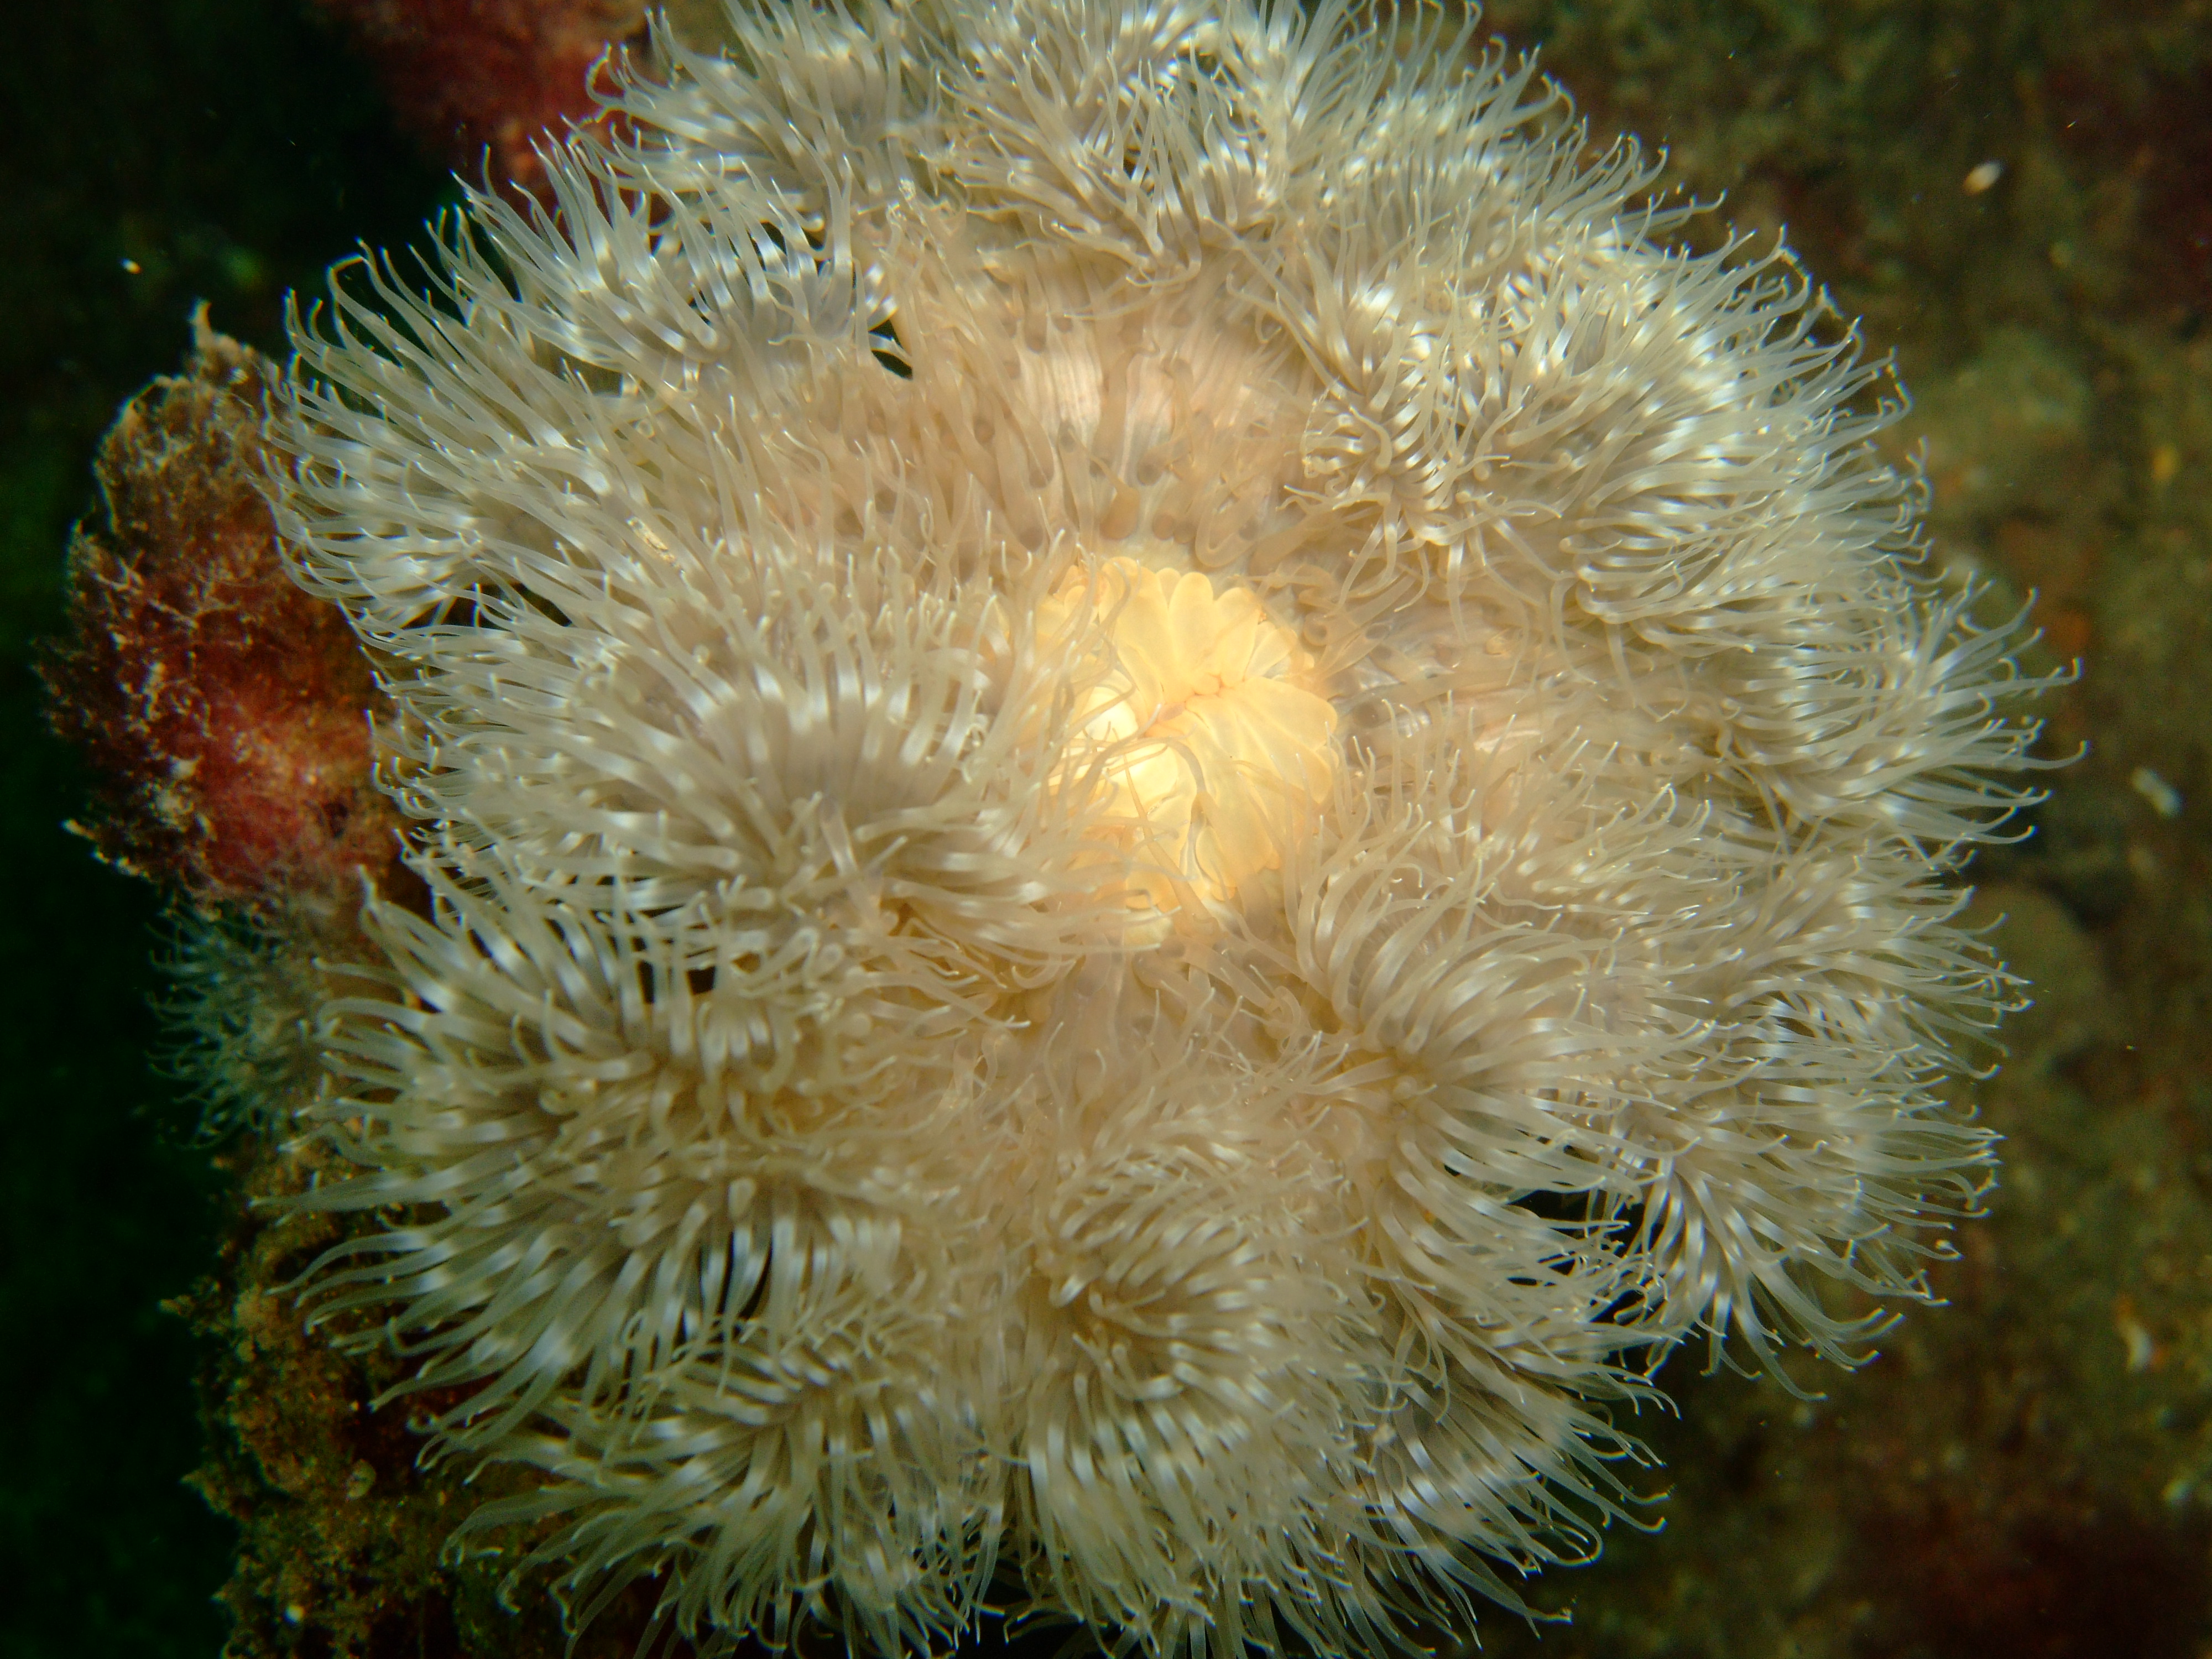 Plumose anemones (Metridium senile)